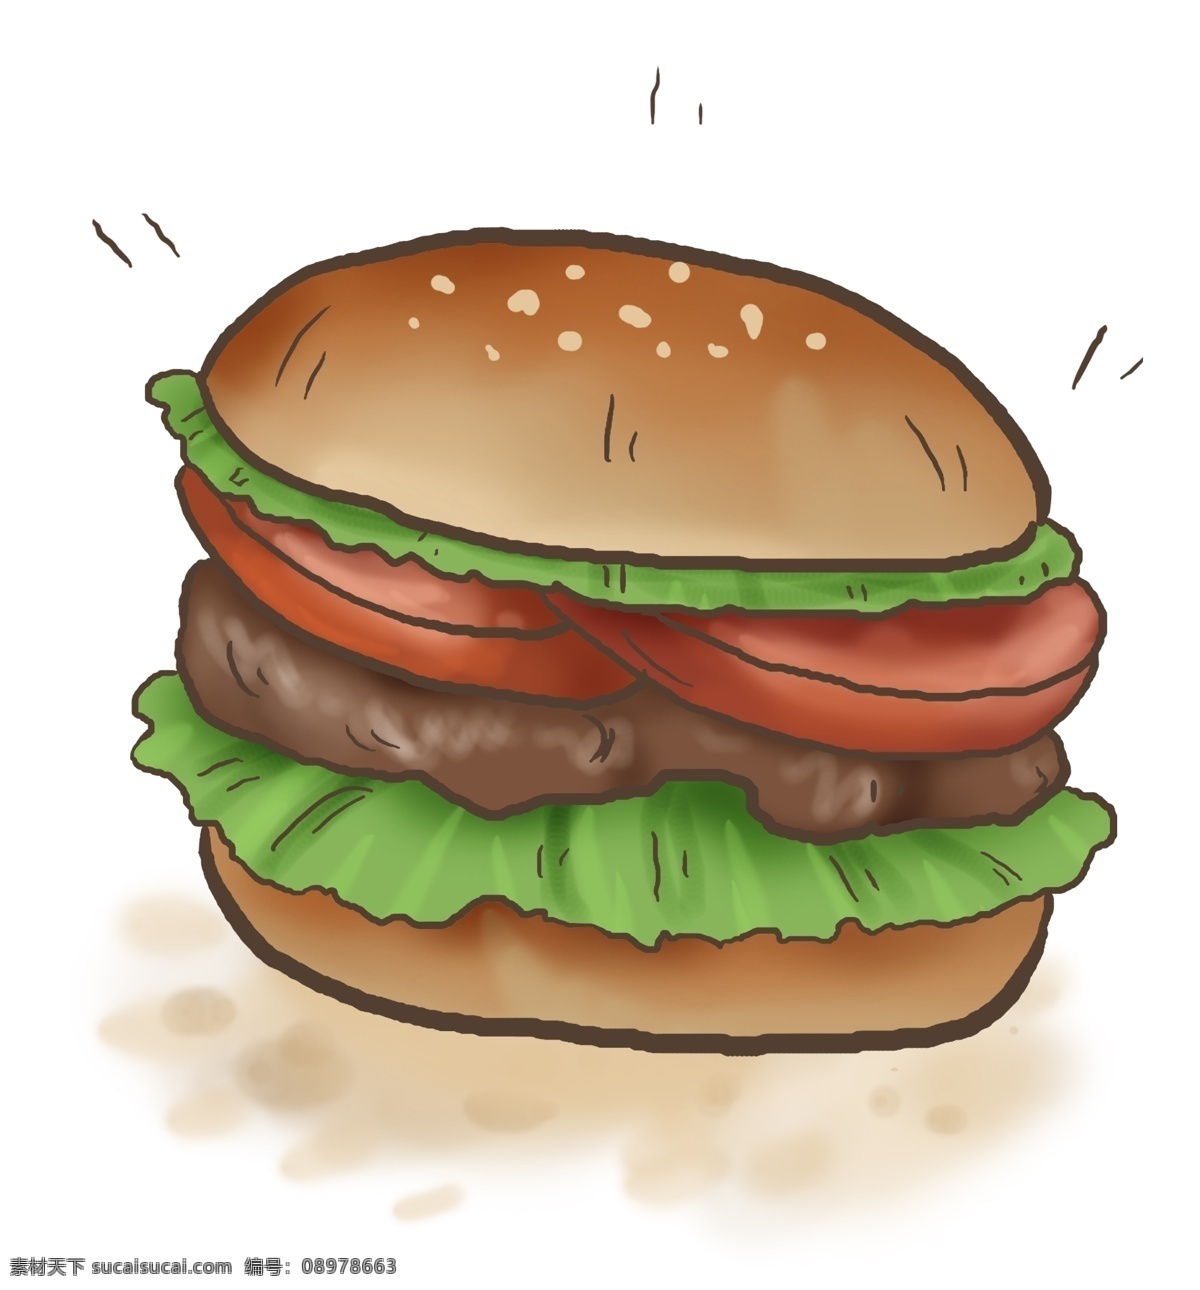 西餐 西红柿 牛肉 汉堡 洋快餐 美食餐饮 食材 汉堡制作 餐饮 汉堡包 汉堡酱 生菜 肉块 快餐 绿色生菜